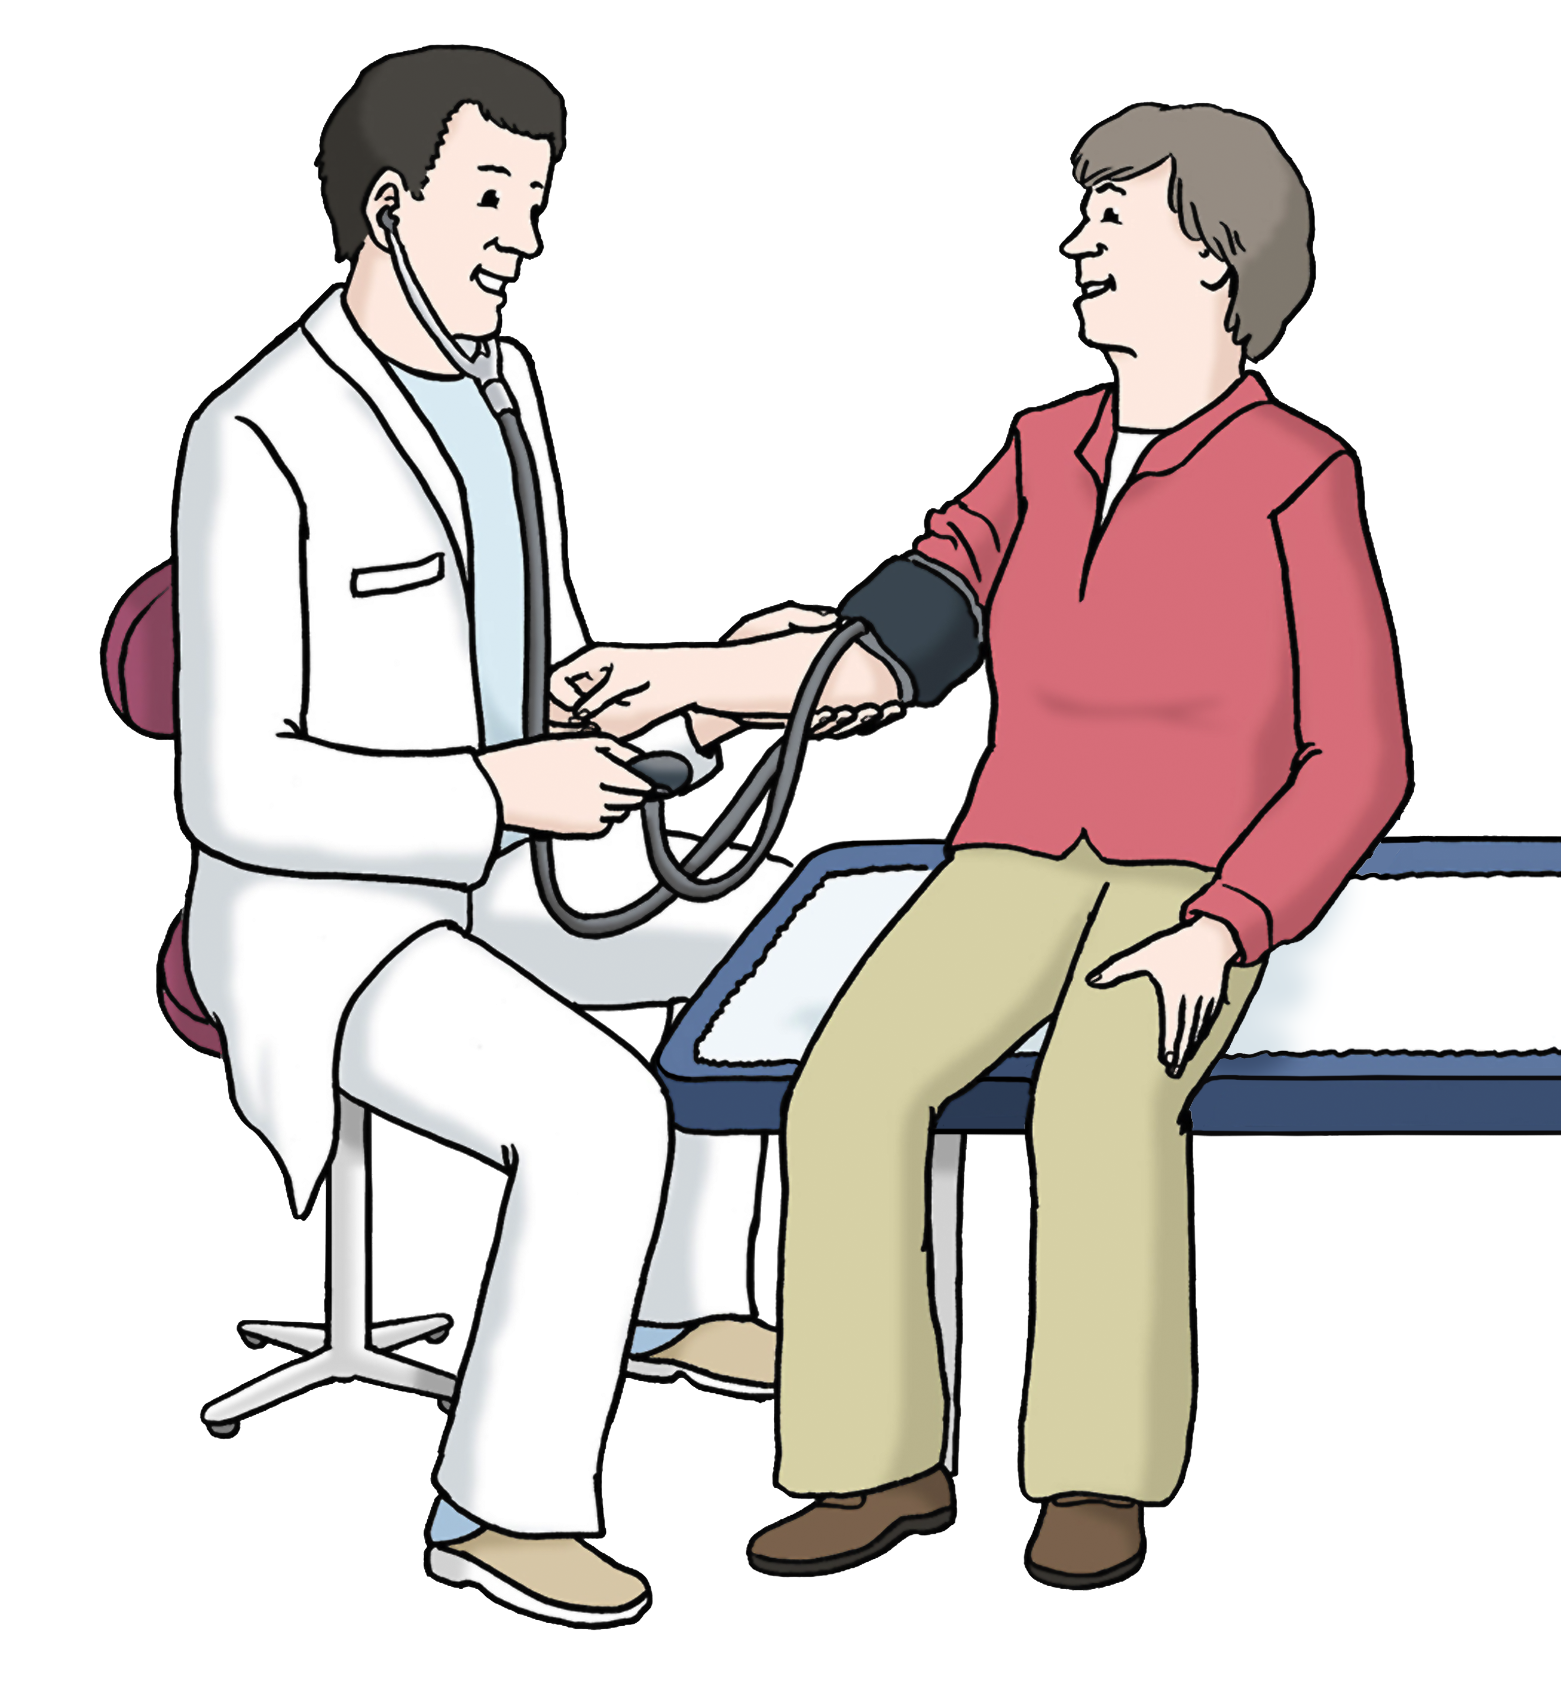 Grafik: Ein Arzt behandelt seine Patientin, die auf einer Liege sitzt